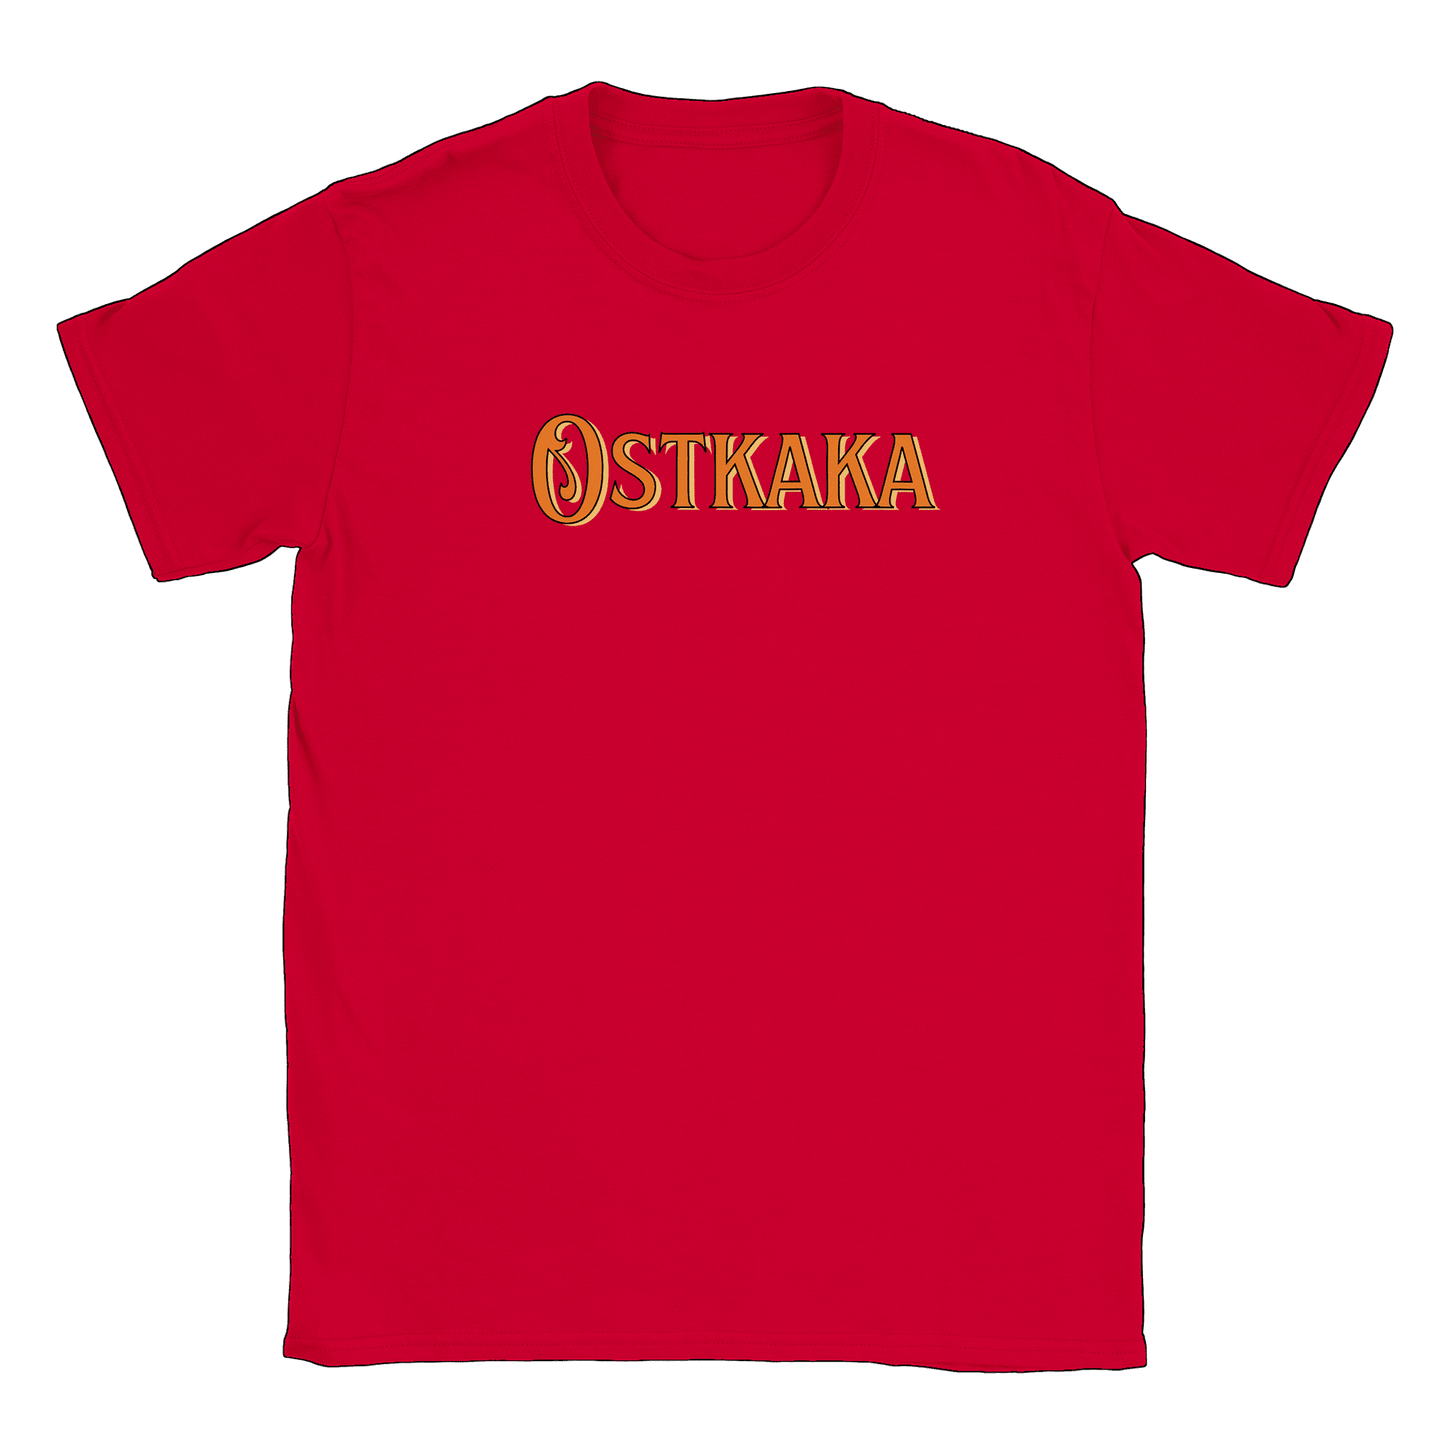 Ostkaka - T-shirt Röd